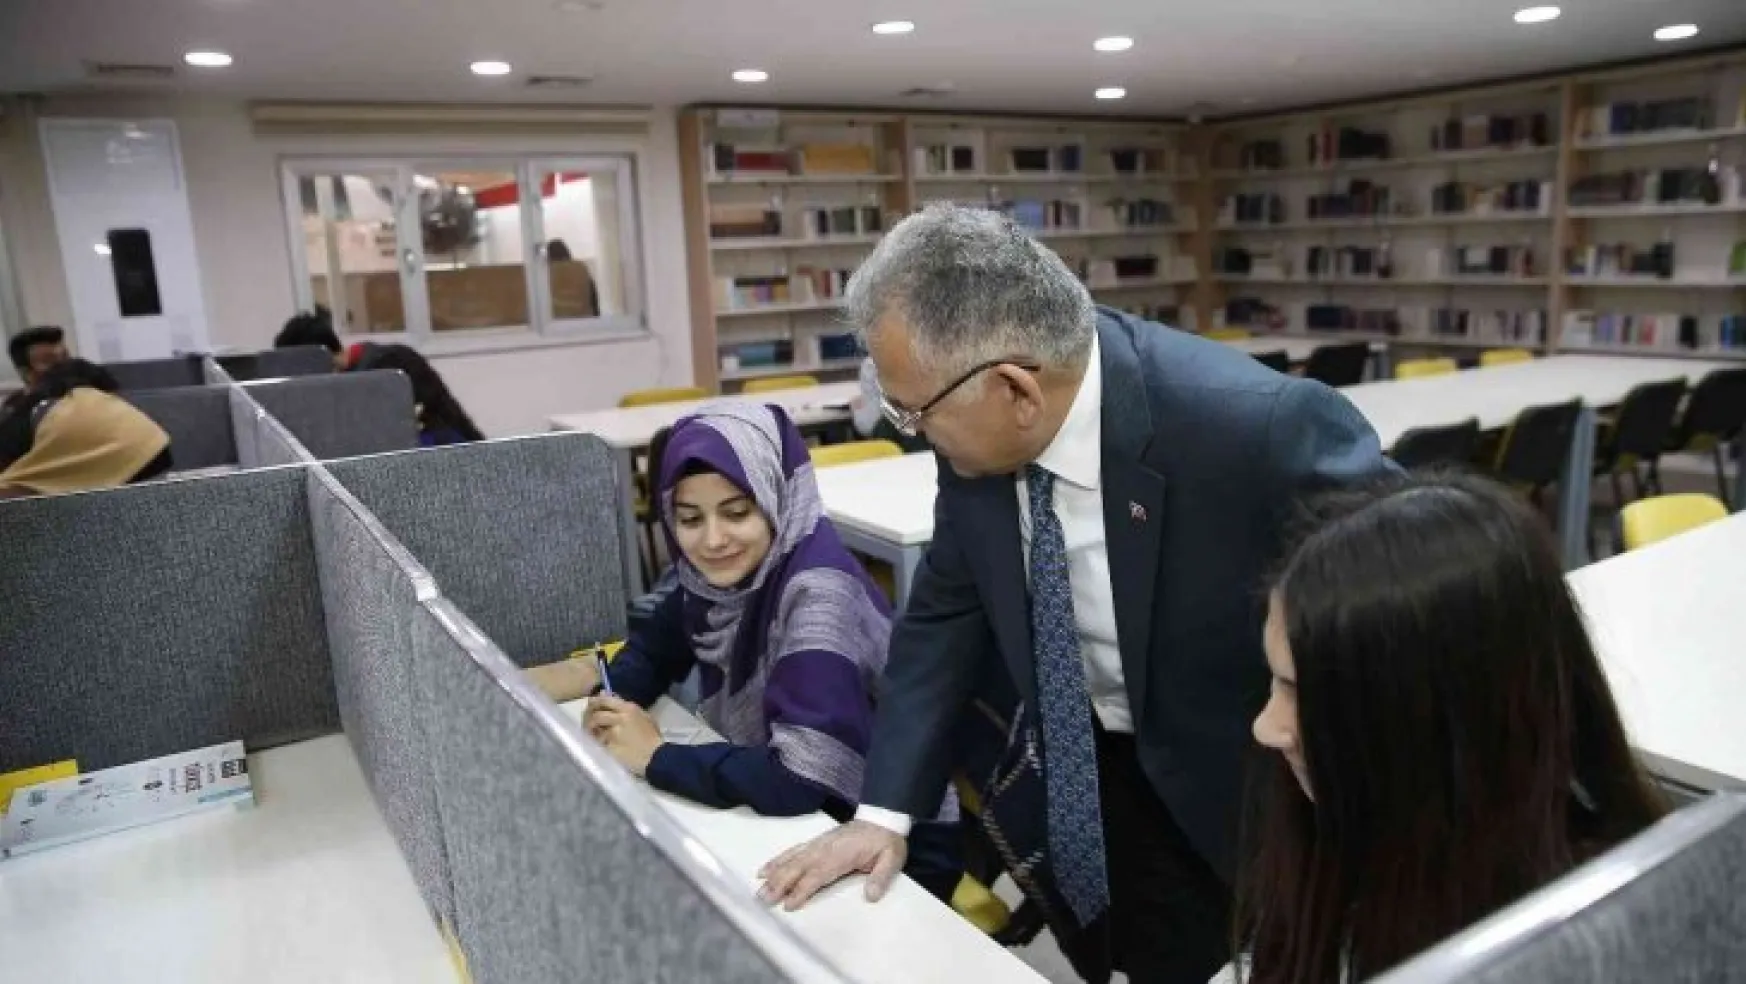 Büyükkılıç'tan 5 üniversitesi, 80 bin öğrencisiyle 'genç dostu' şehir Kayseri'ye davet